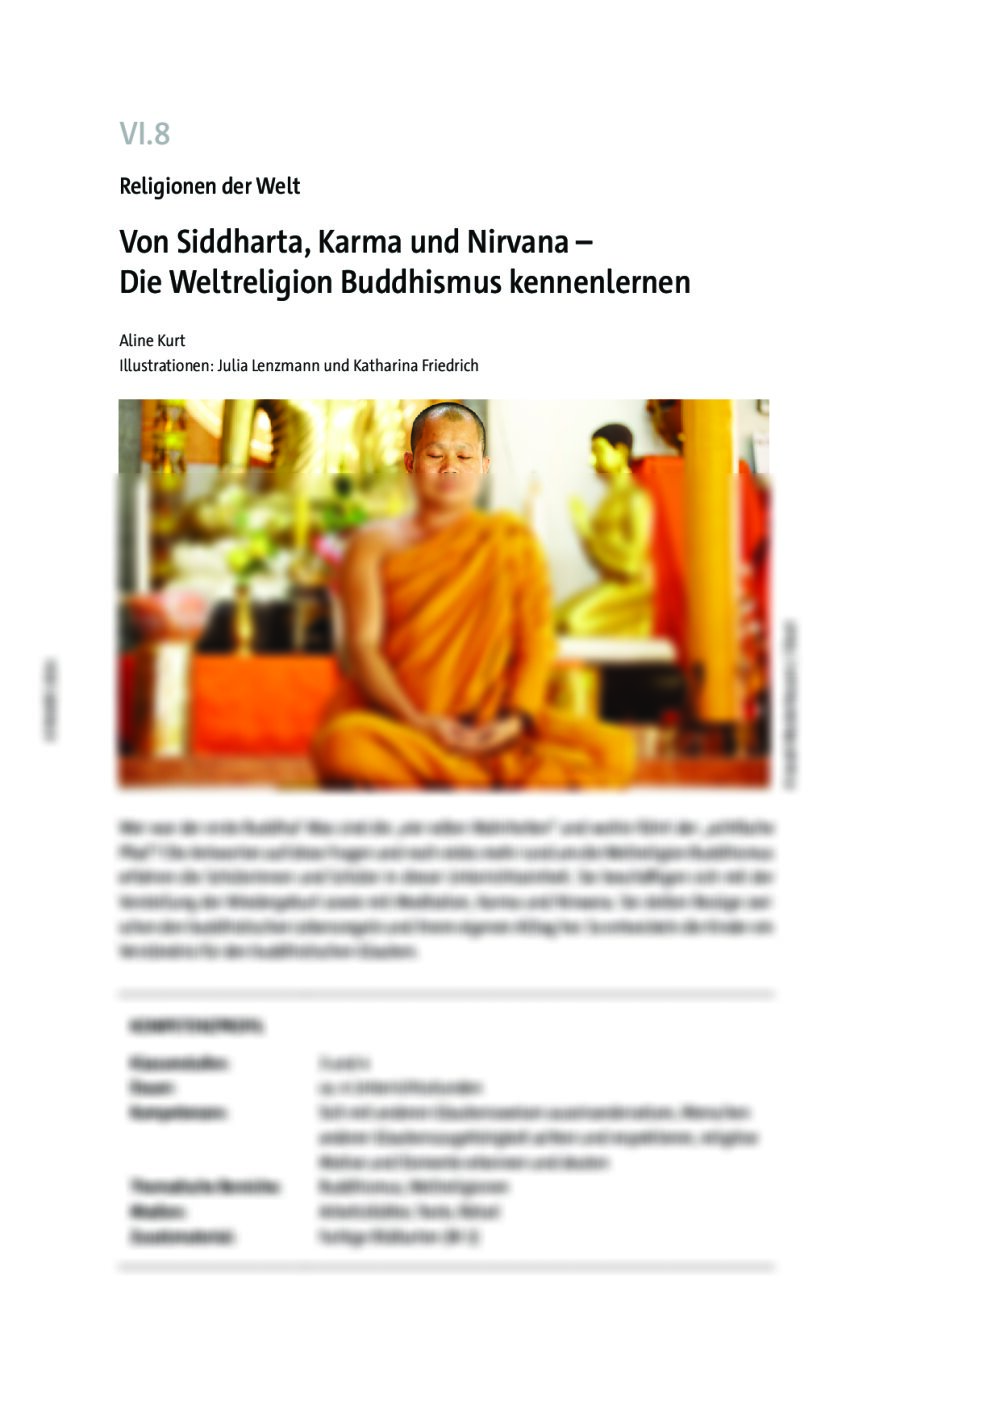 Von Siddharta, Karma und Nirvana  - Seite 1